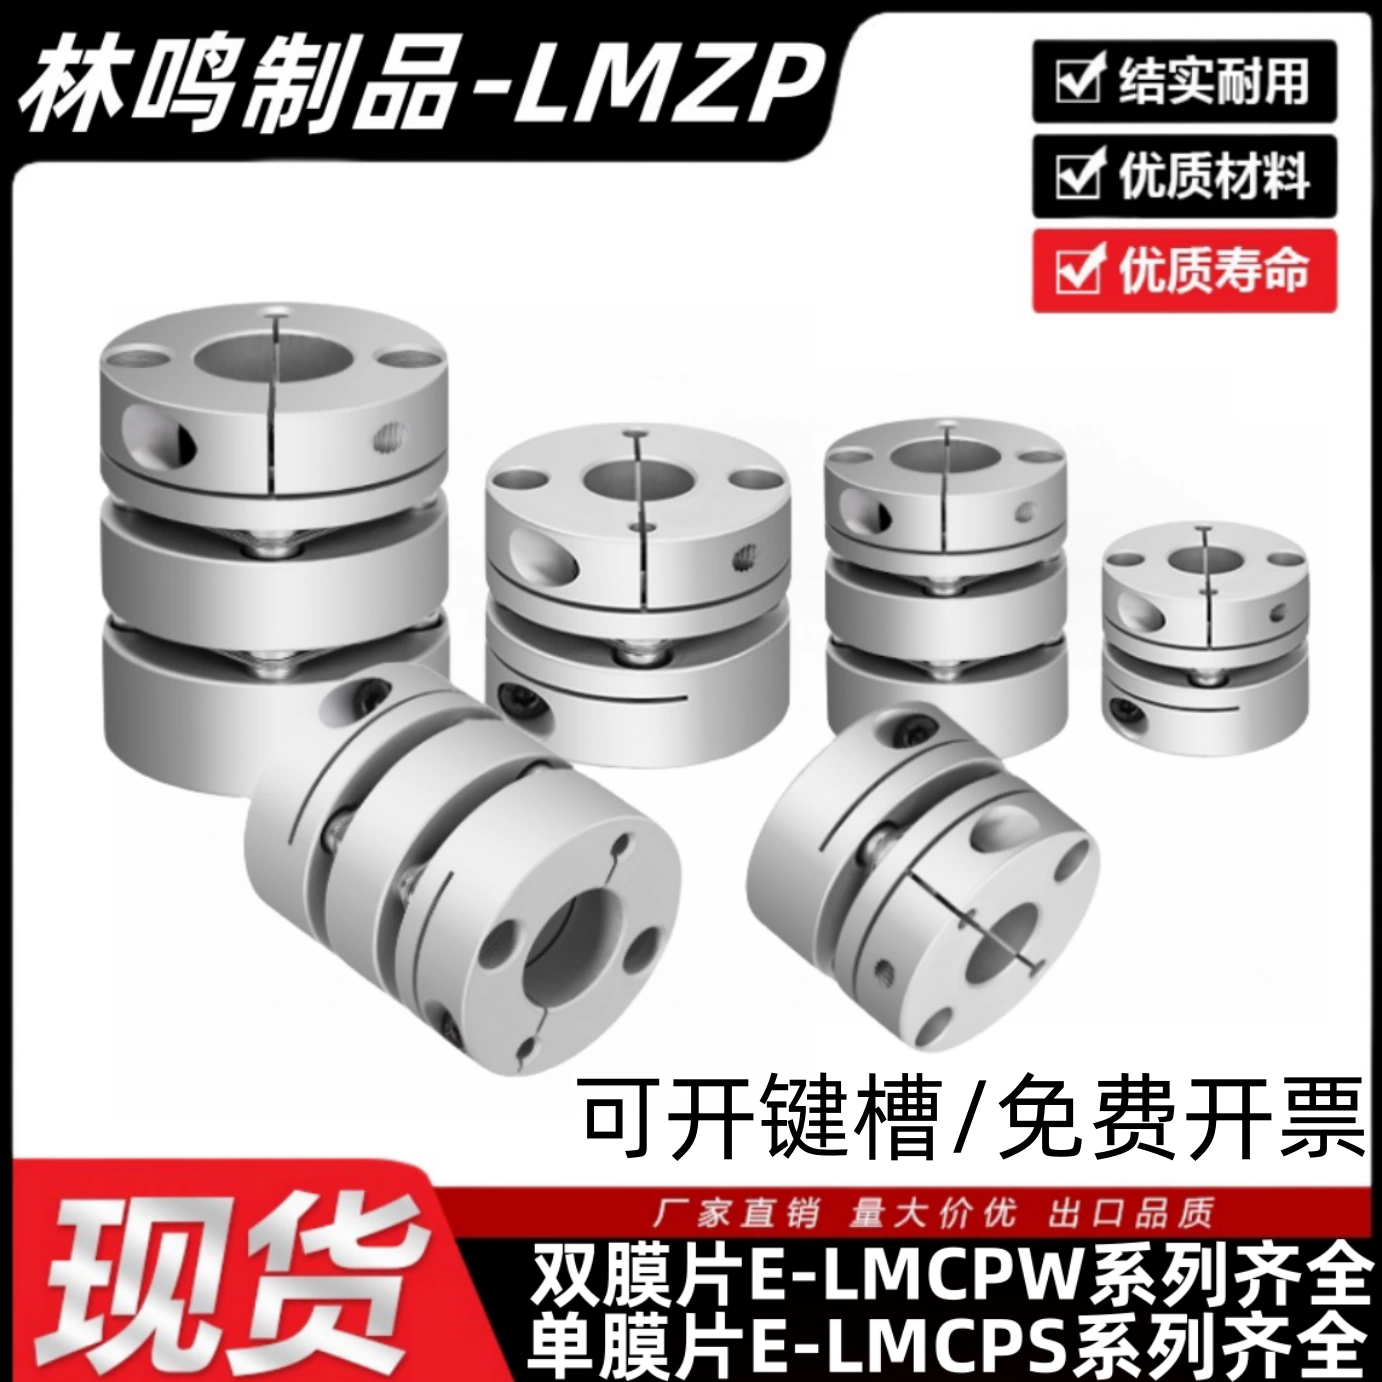 20 khớp nối E-LMCPS29-LMCPW16-26/33/32/34/39/44/10/8-12-14-15-18 các loại khớp nối thủy lực khớp xoay thủy lực